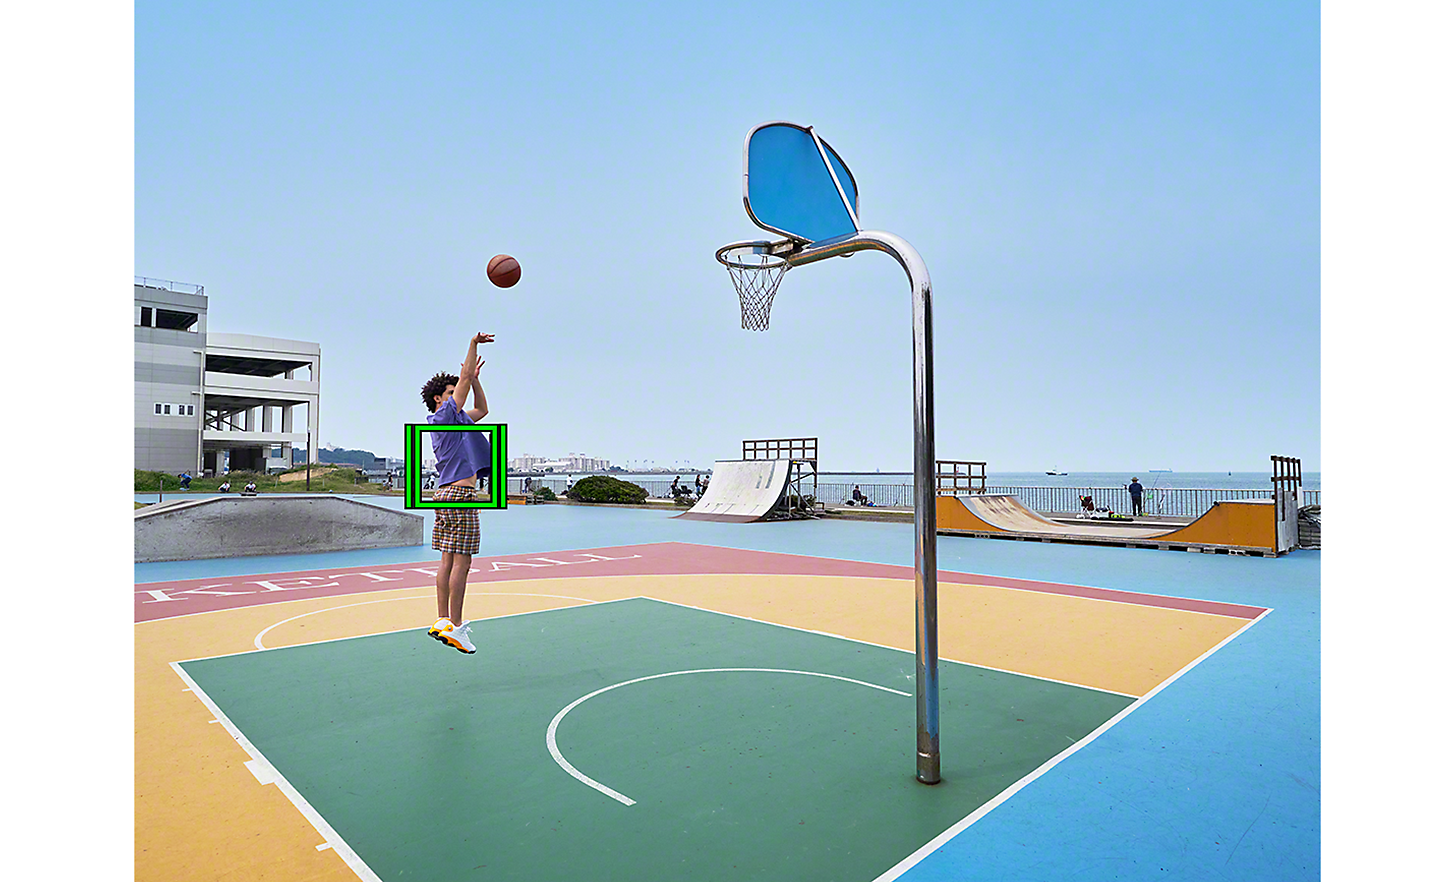 Basketbalista strieľa v skoku so zeleným štvorčekom, ktorý označuje sledovanie v reálnom čase